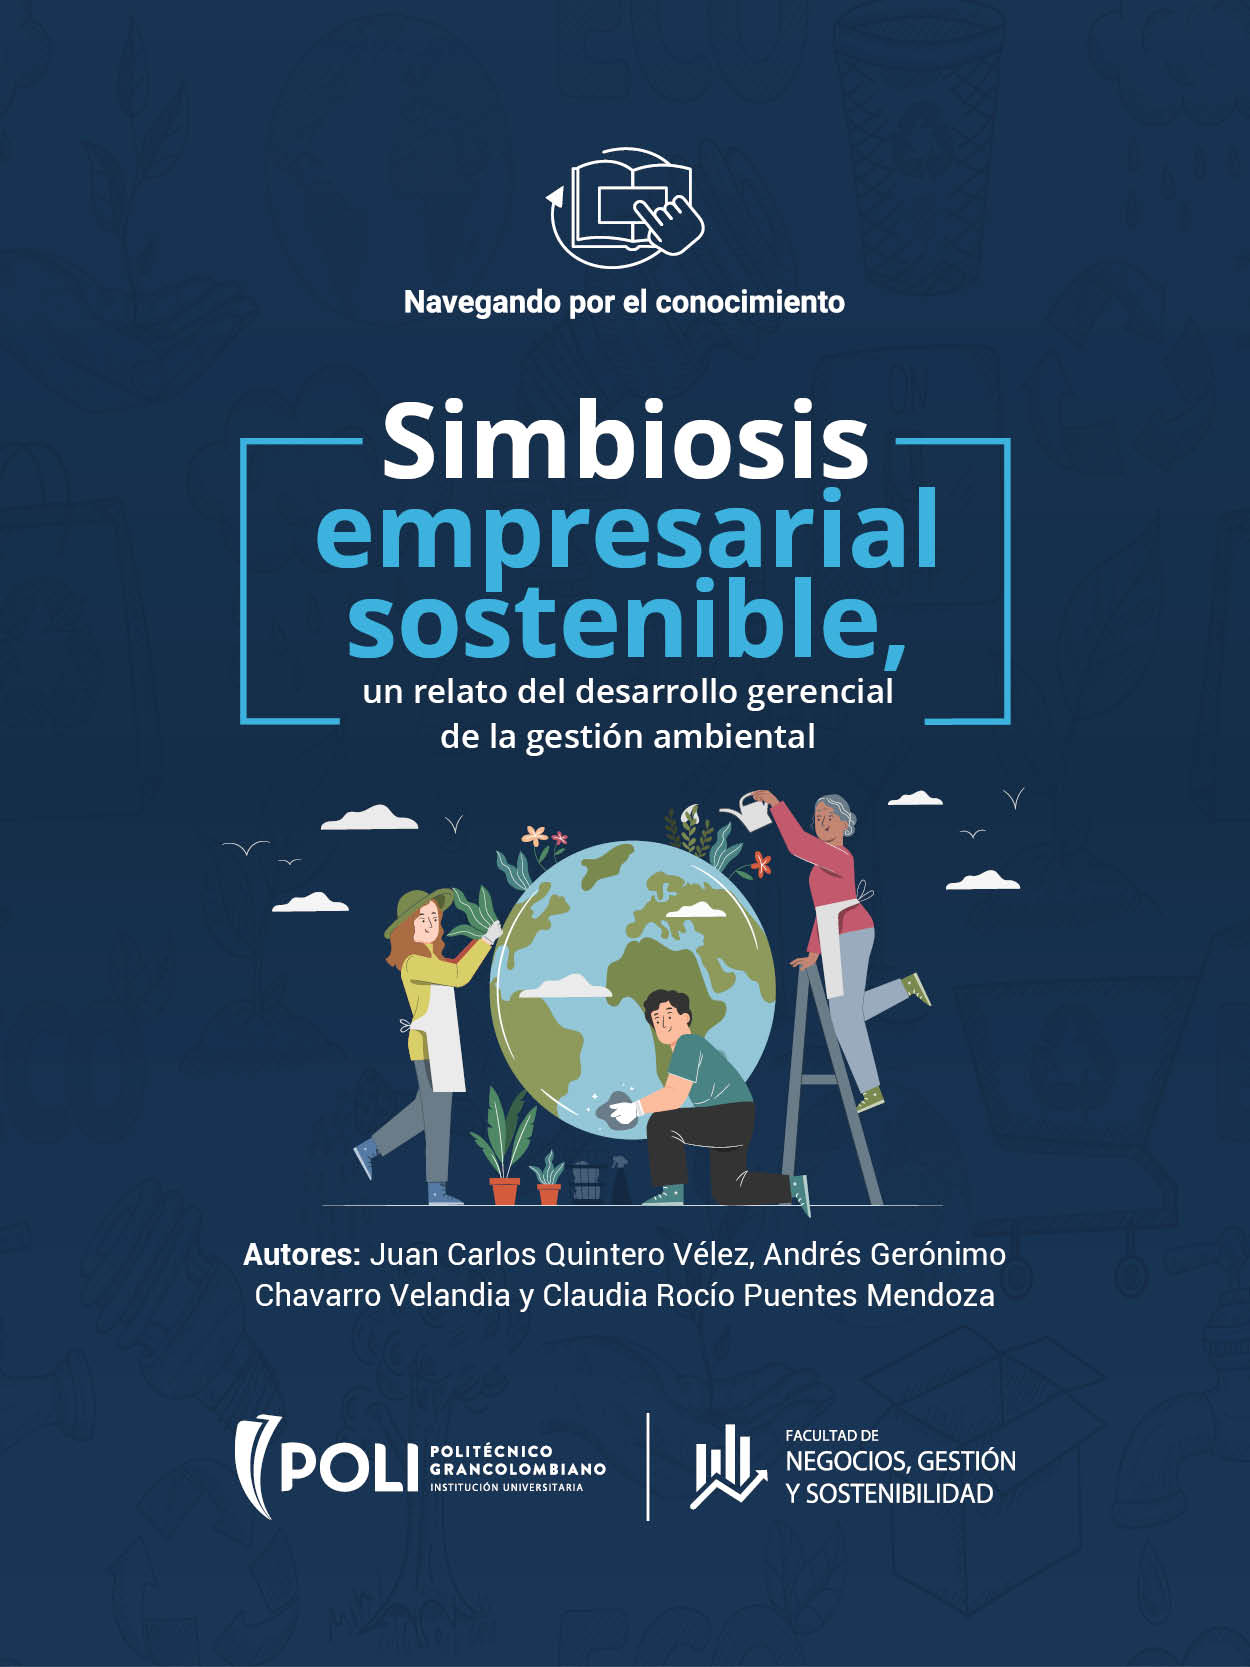 Simbiosis empresarial sostenible, un relato del desarrollo gerencial de la gestión ambiental